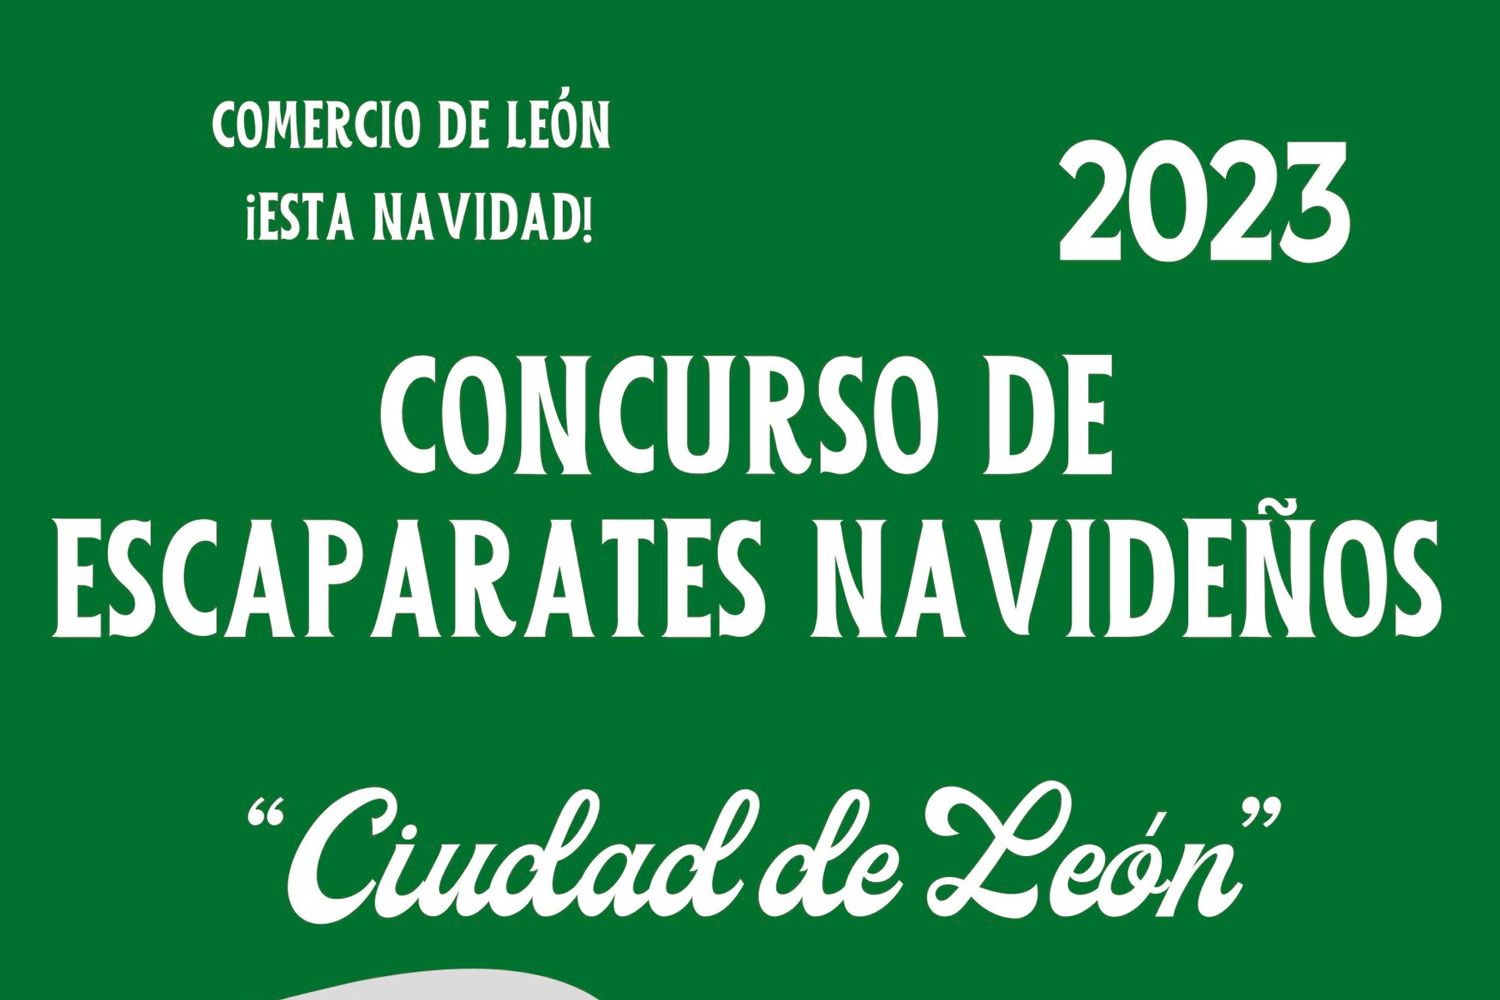 Parte del cartel anunciador del concurso de escaparates de León